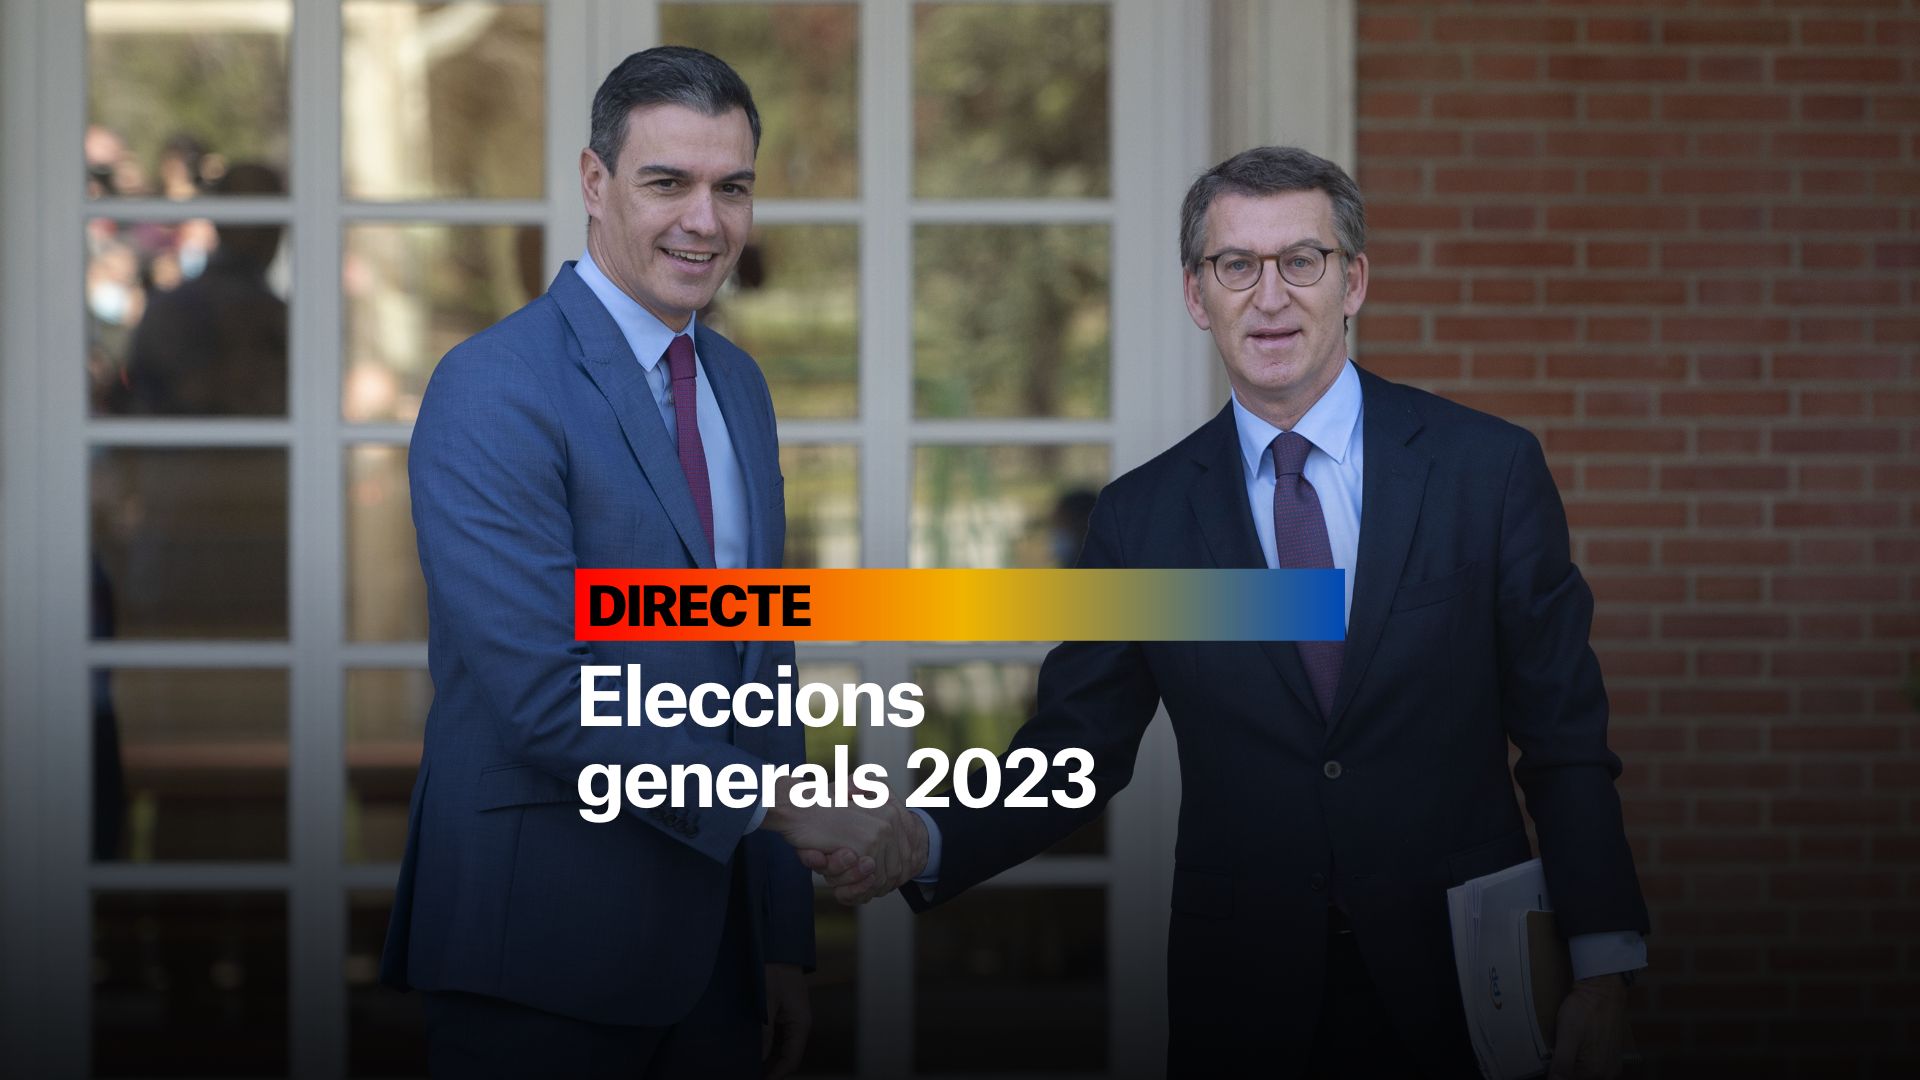 Eleccions generals 2023, DIRECTE | Últimes notícies del 10 de juliol